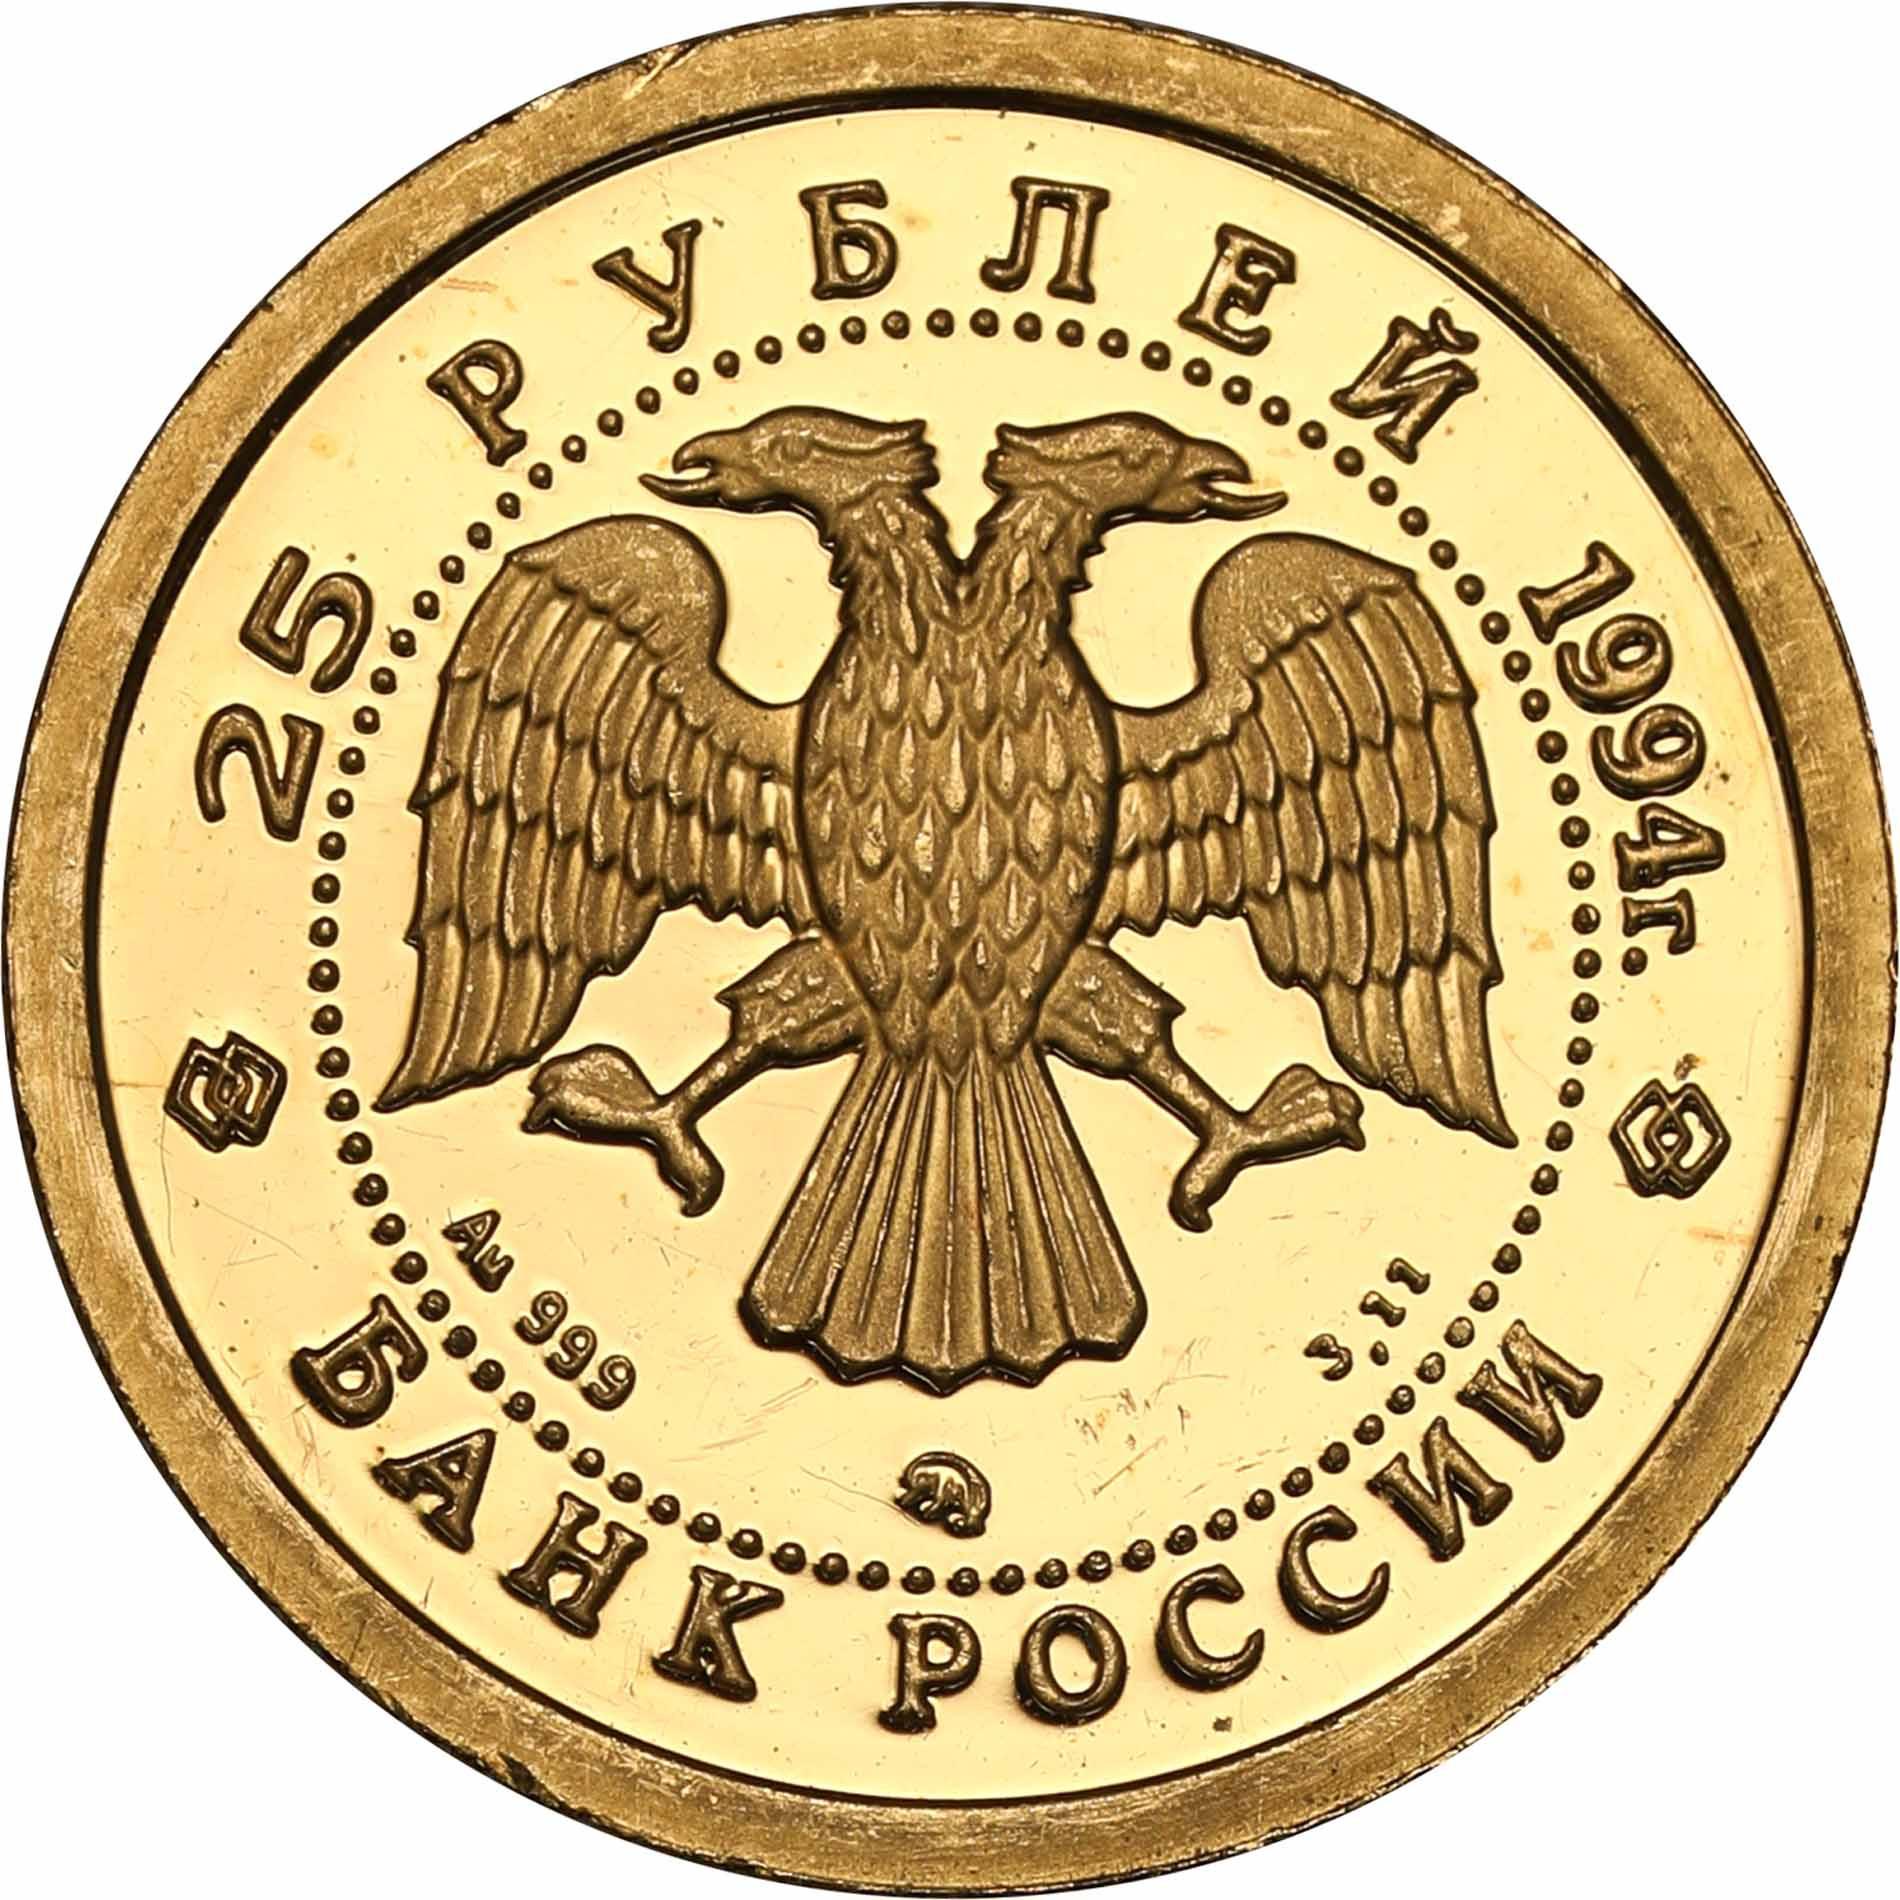 Rosja. 25 rubli 1993 Balet - 1/10 uncji złota